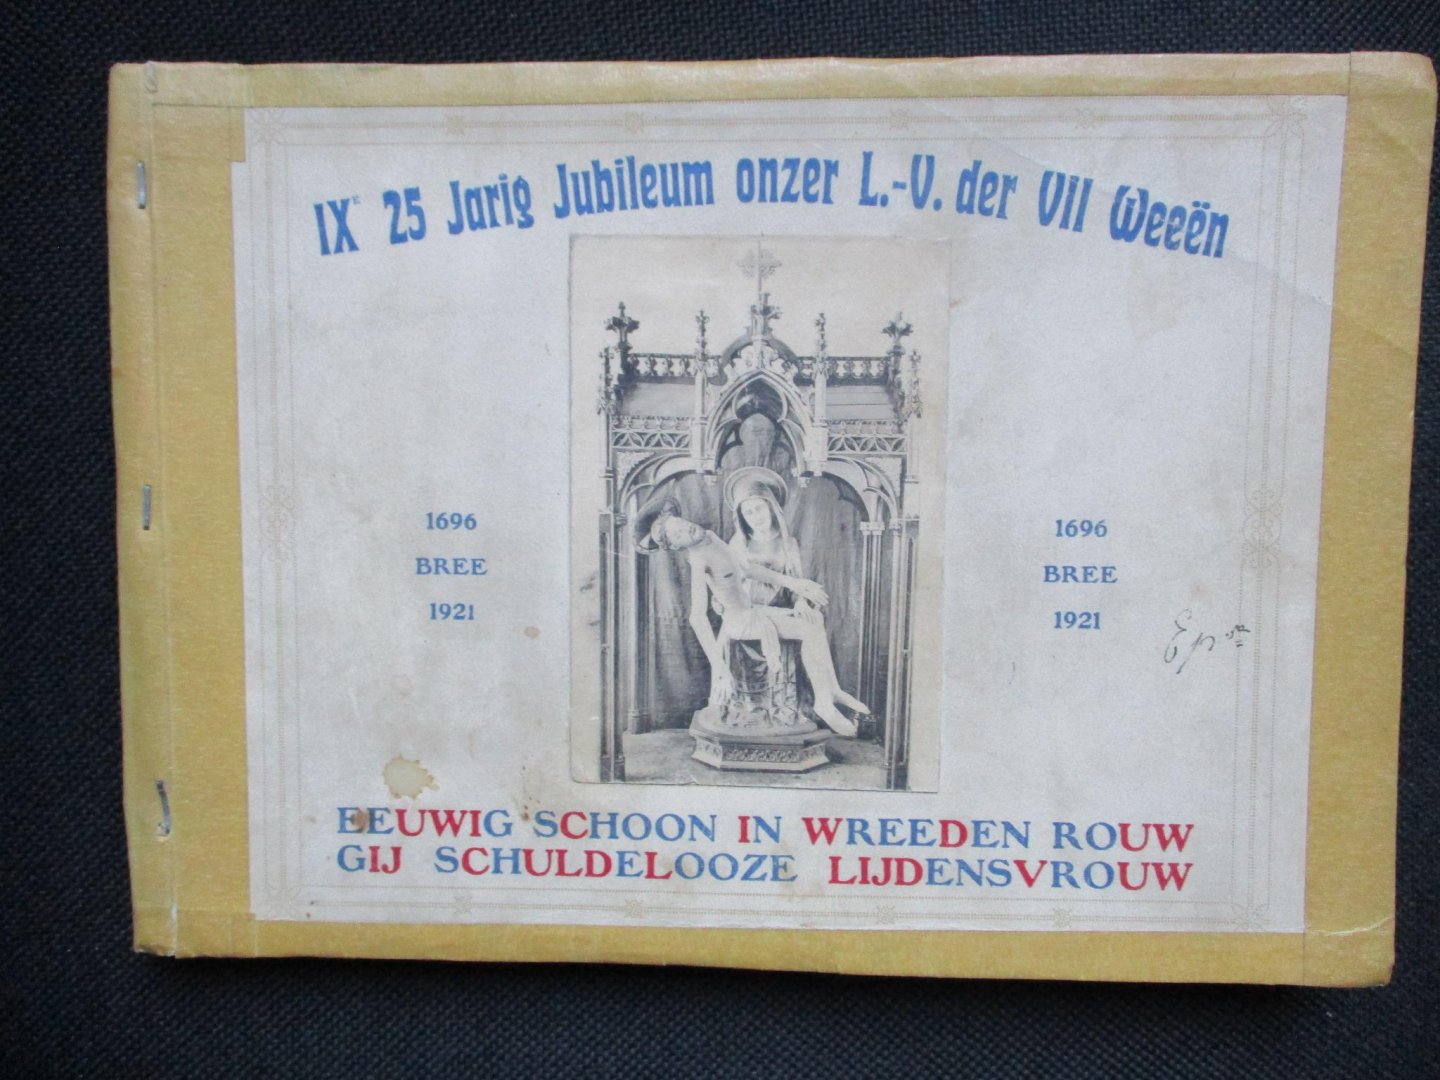  - Bree 1696-1921. IXe 25 Jarig Jubileum O-L-V-der VII Weeën.